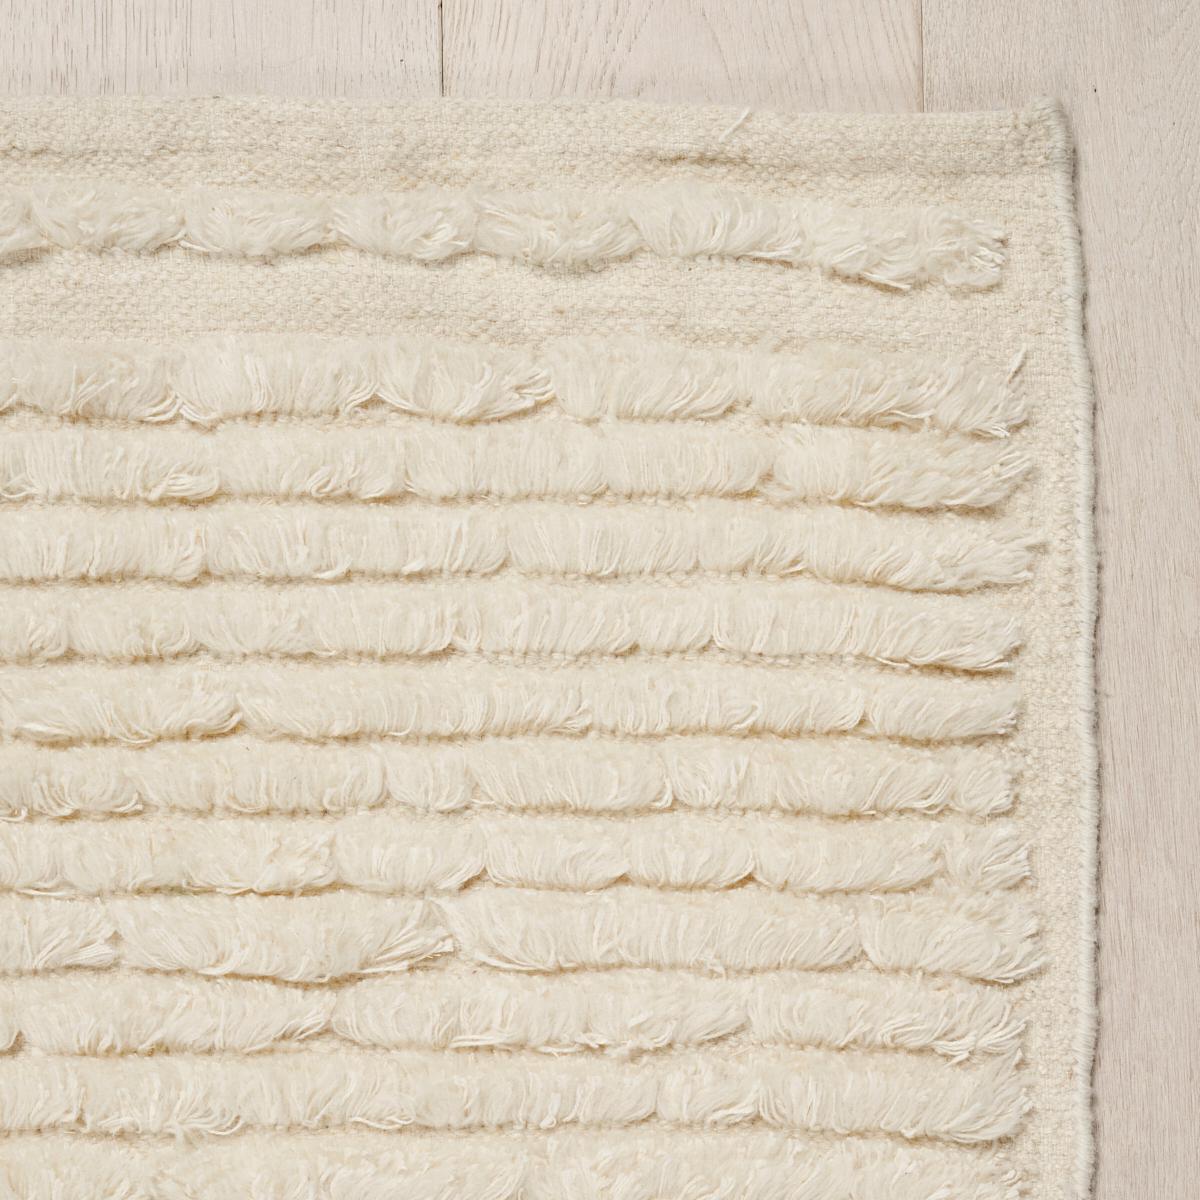 Unser Teppich Cirrus ist ein einfaches Flachgewebe aus Wolle, das durch pelzige Reihen von fransenähnlichen Baumwoll-Leinen-Tuftings auffällt. Dieser einzigartige Teppich ist ein unaufdringliches Statement und verleiht jedem Raum eine luxuriöse